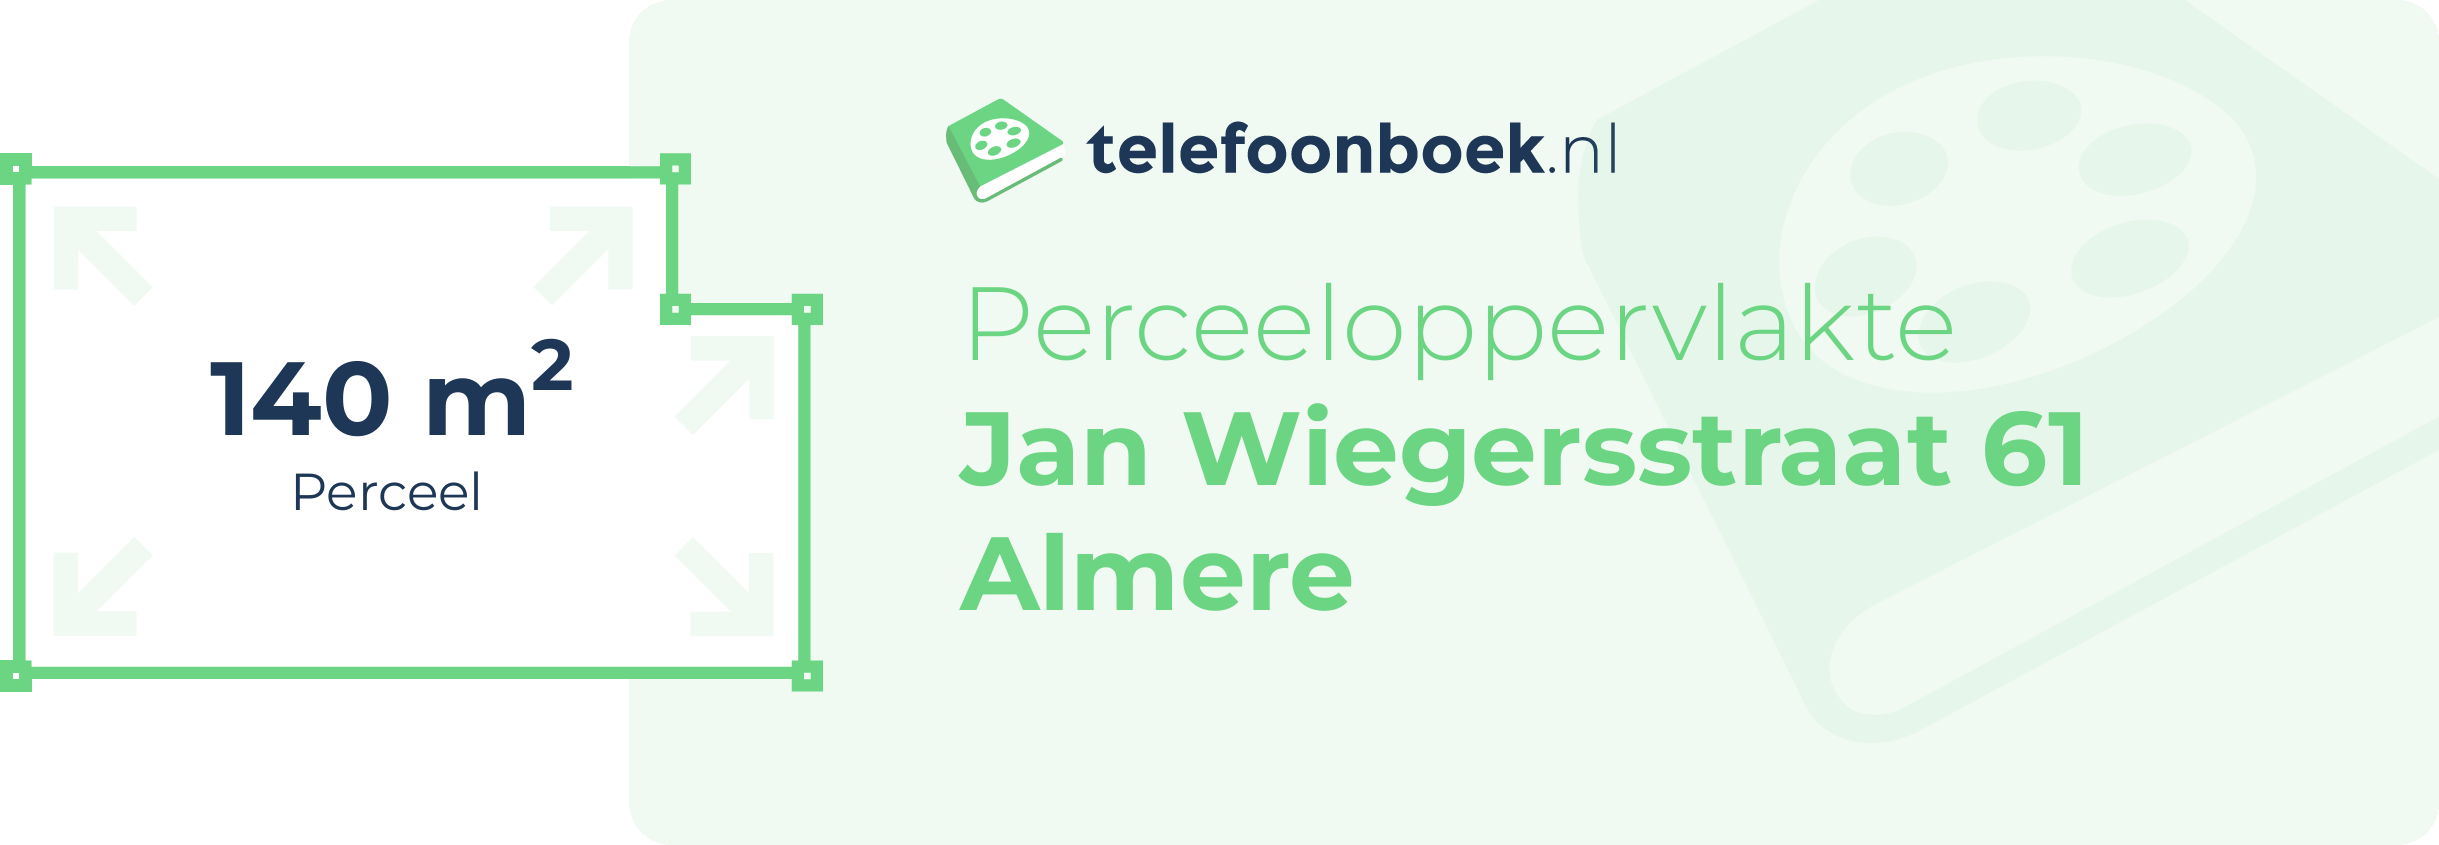 Perceeloppervlakte Jan Wiegersstraat 61 Almere